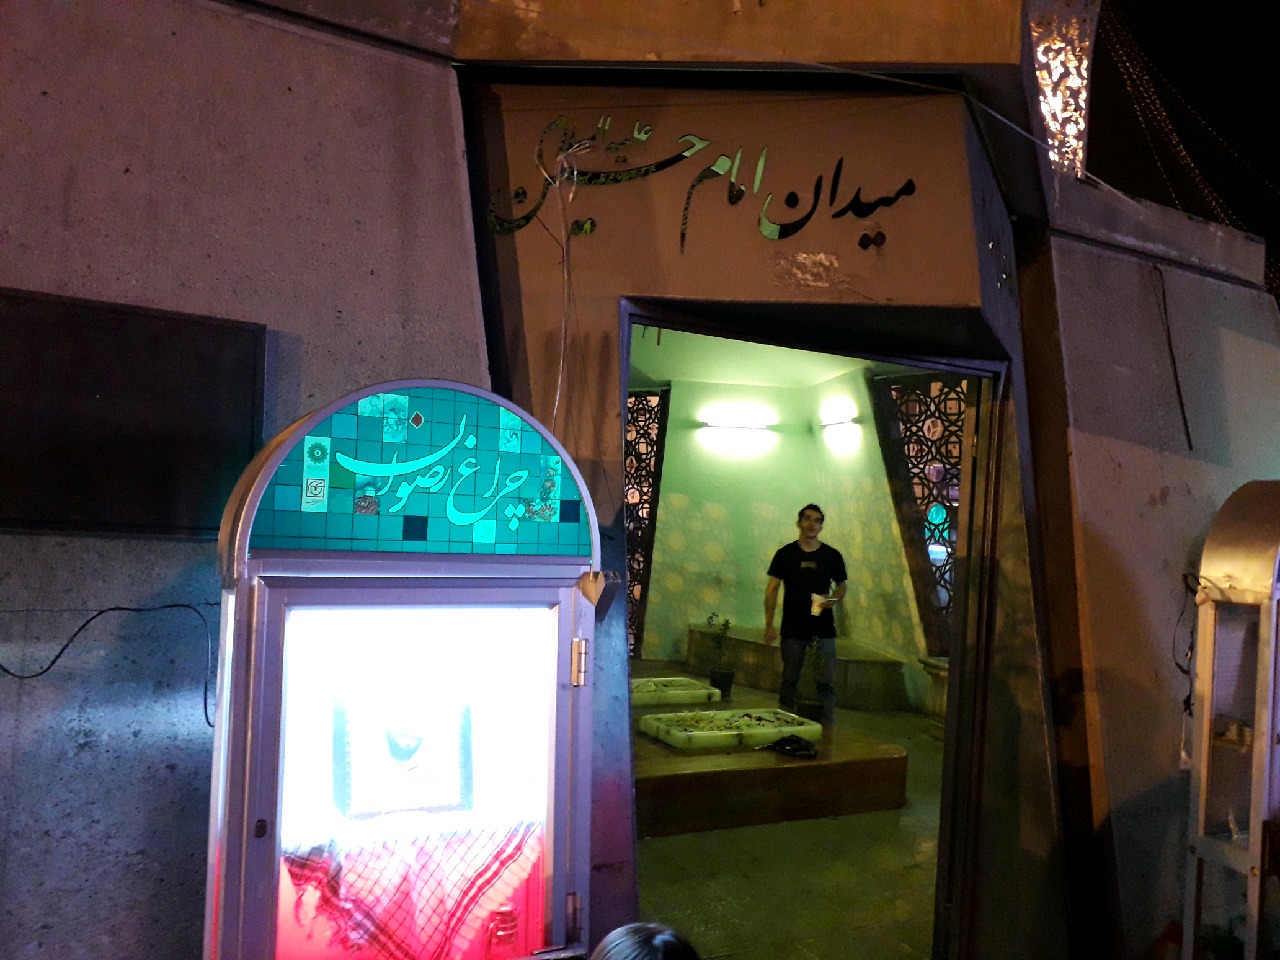 نمایشگاه یاد یاران در تهران افتتاح شد